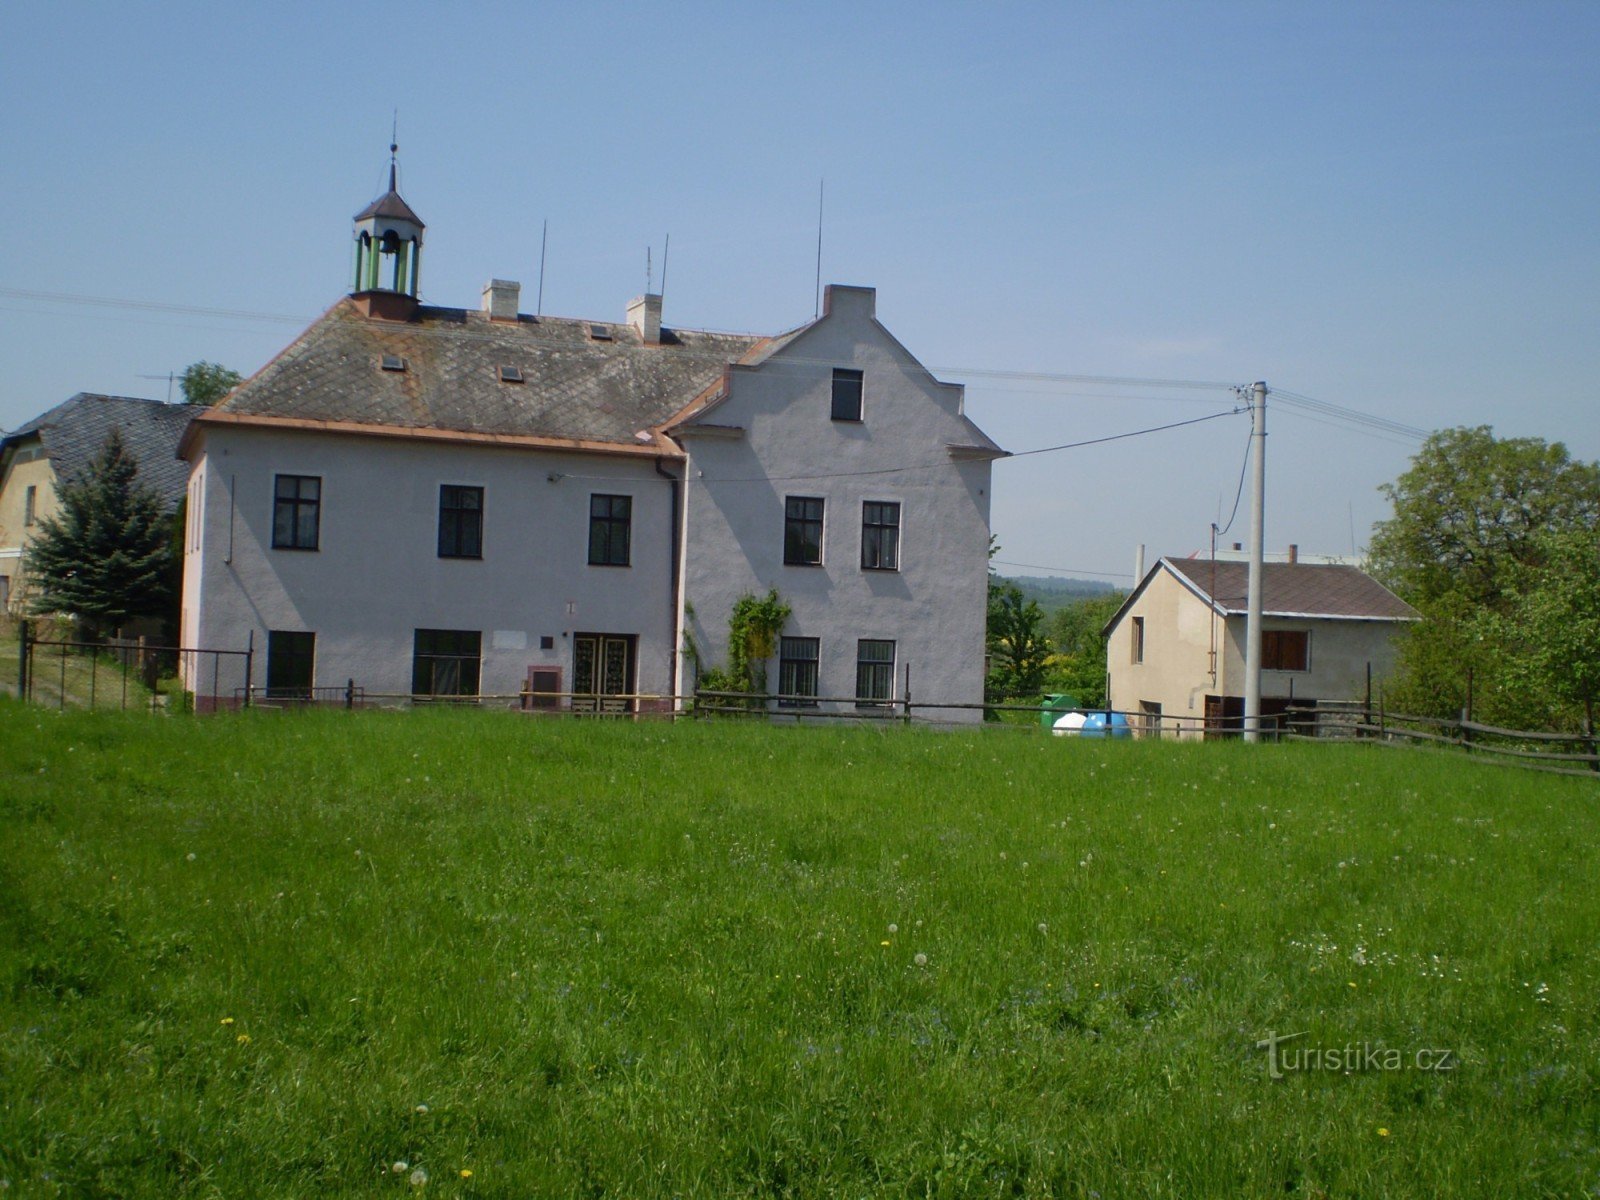 Közösségi ház, eredetileg volt iskola